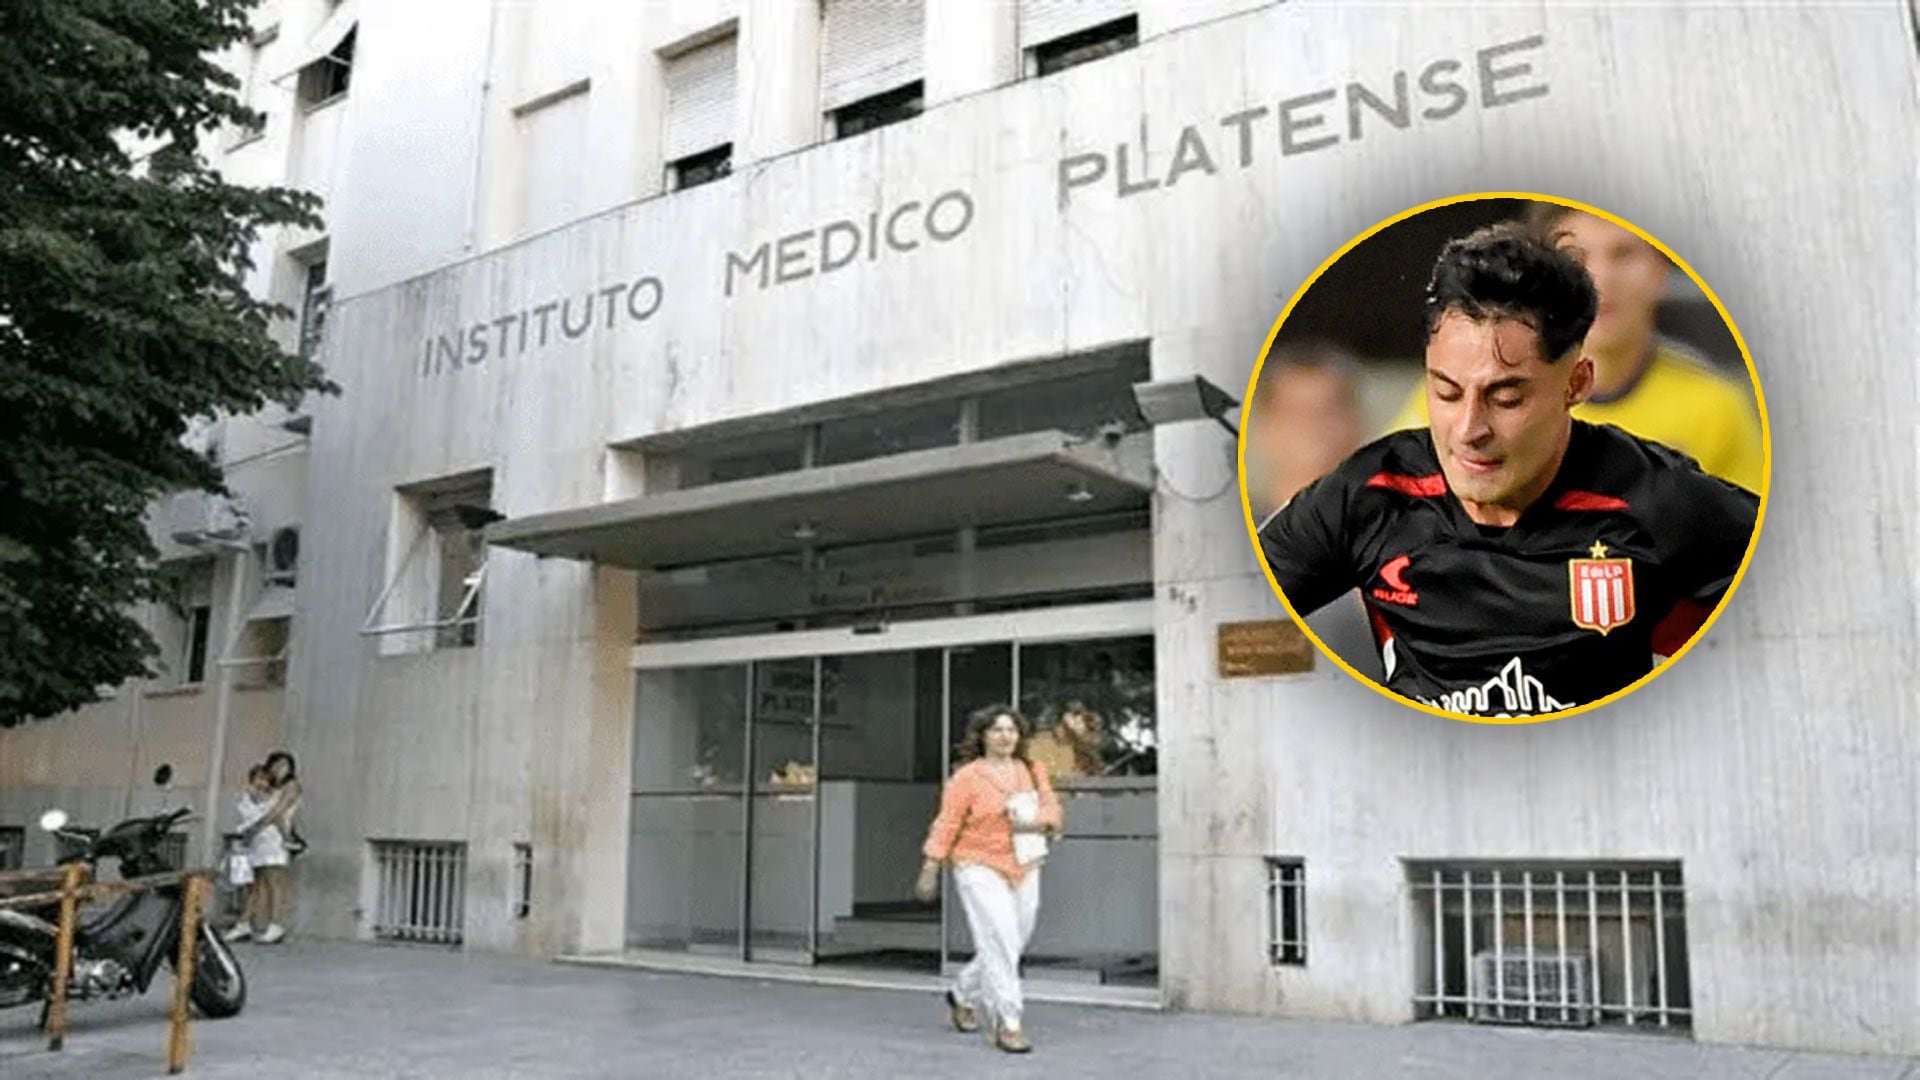 Novedades del estado de Javier Altamirano tras su convulsión en Estudiantes-Boca